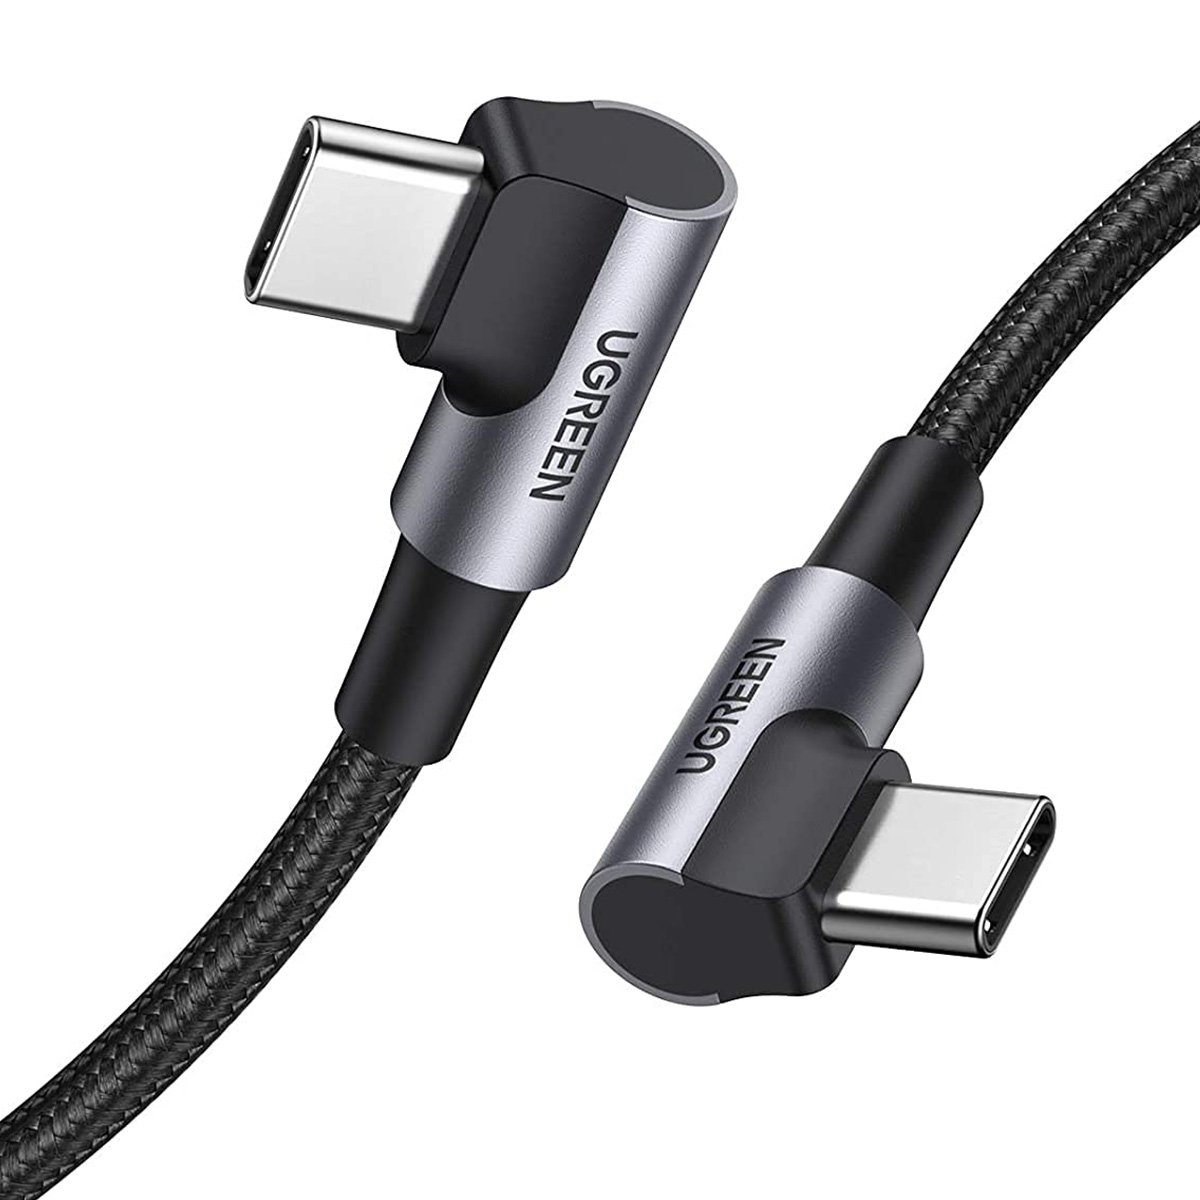 ■ USB-C 2.0 to USB-C 2.0 3A データケーブル (L字型タイプ) 2m